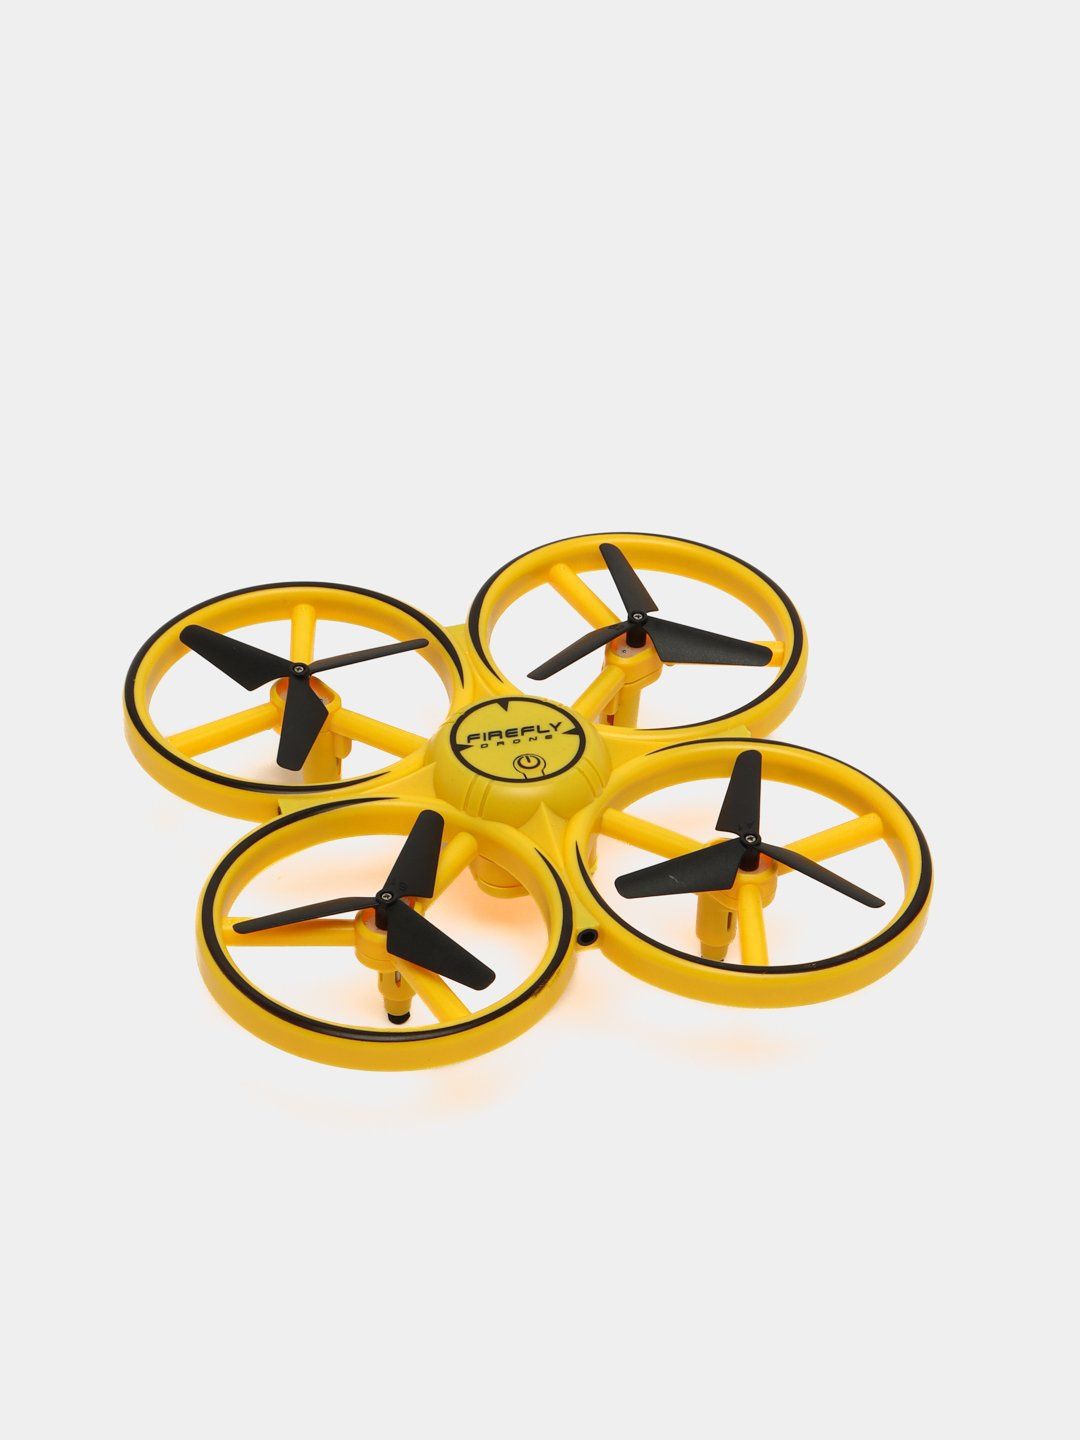 Dron aerocraft - bolalar uchun yangilik - dostavka bepul - ORGINAL